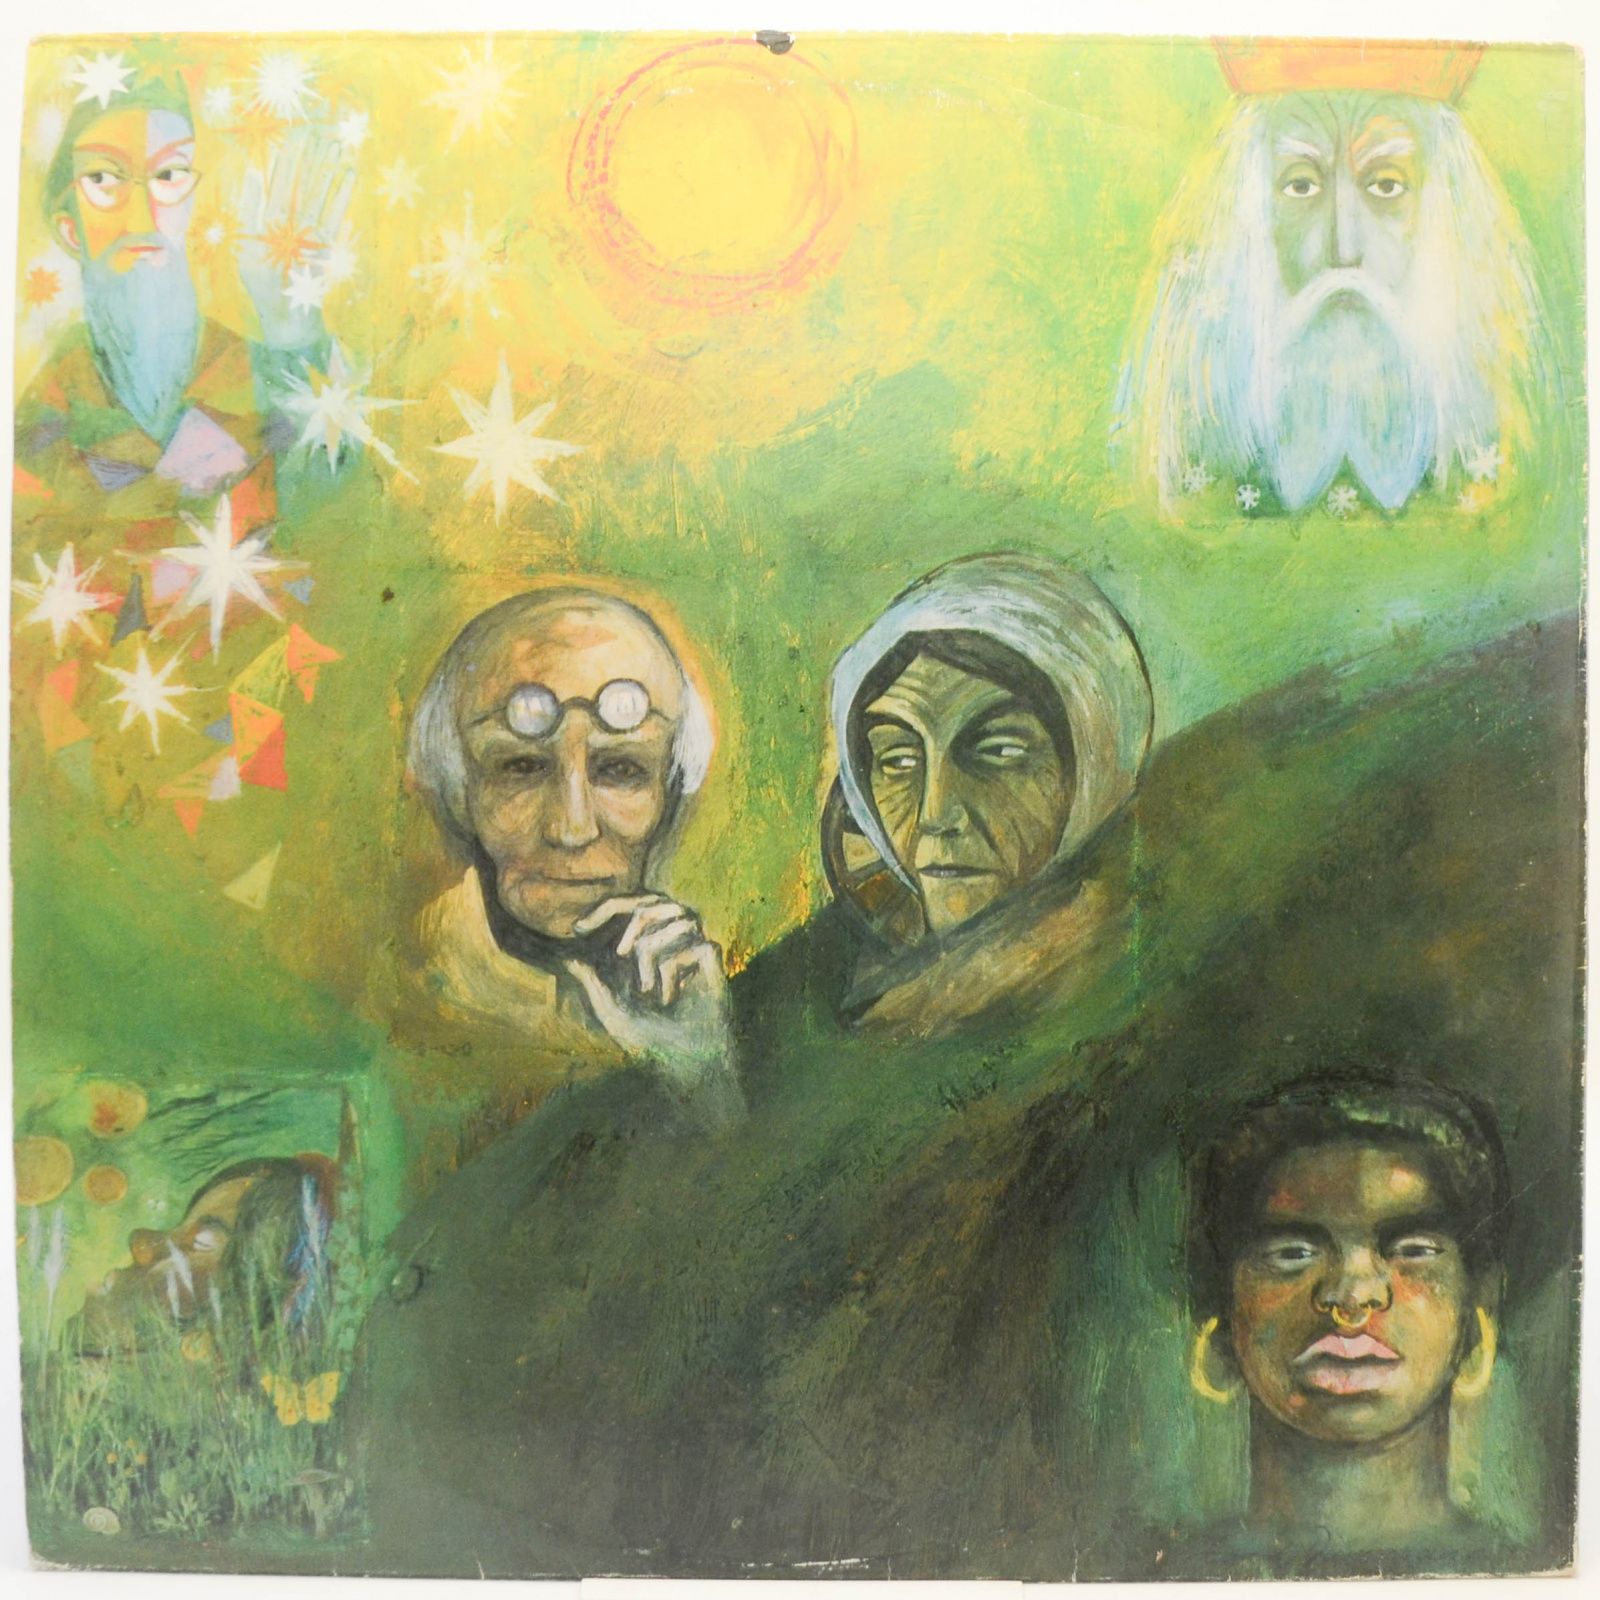 King Crimson — In The Wake Of Poseidon, 1974